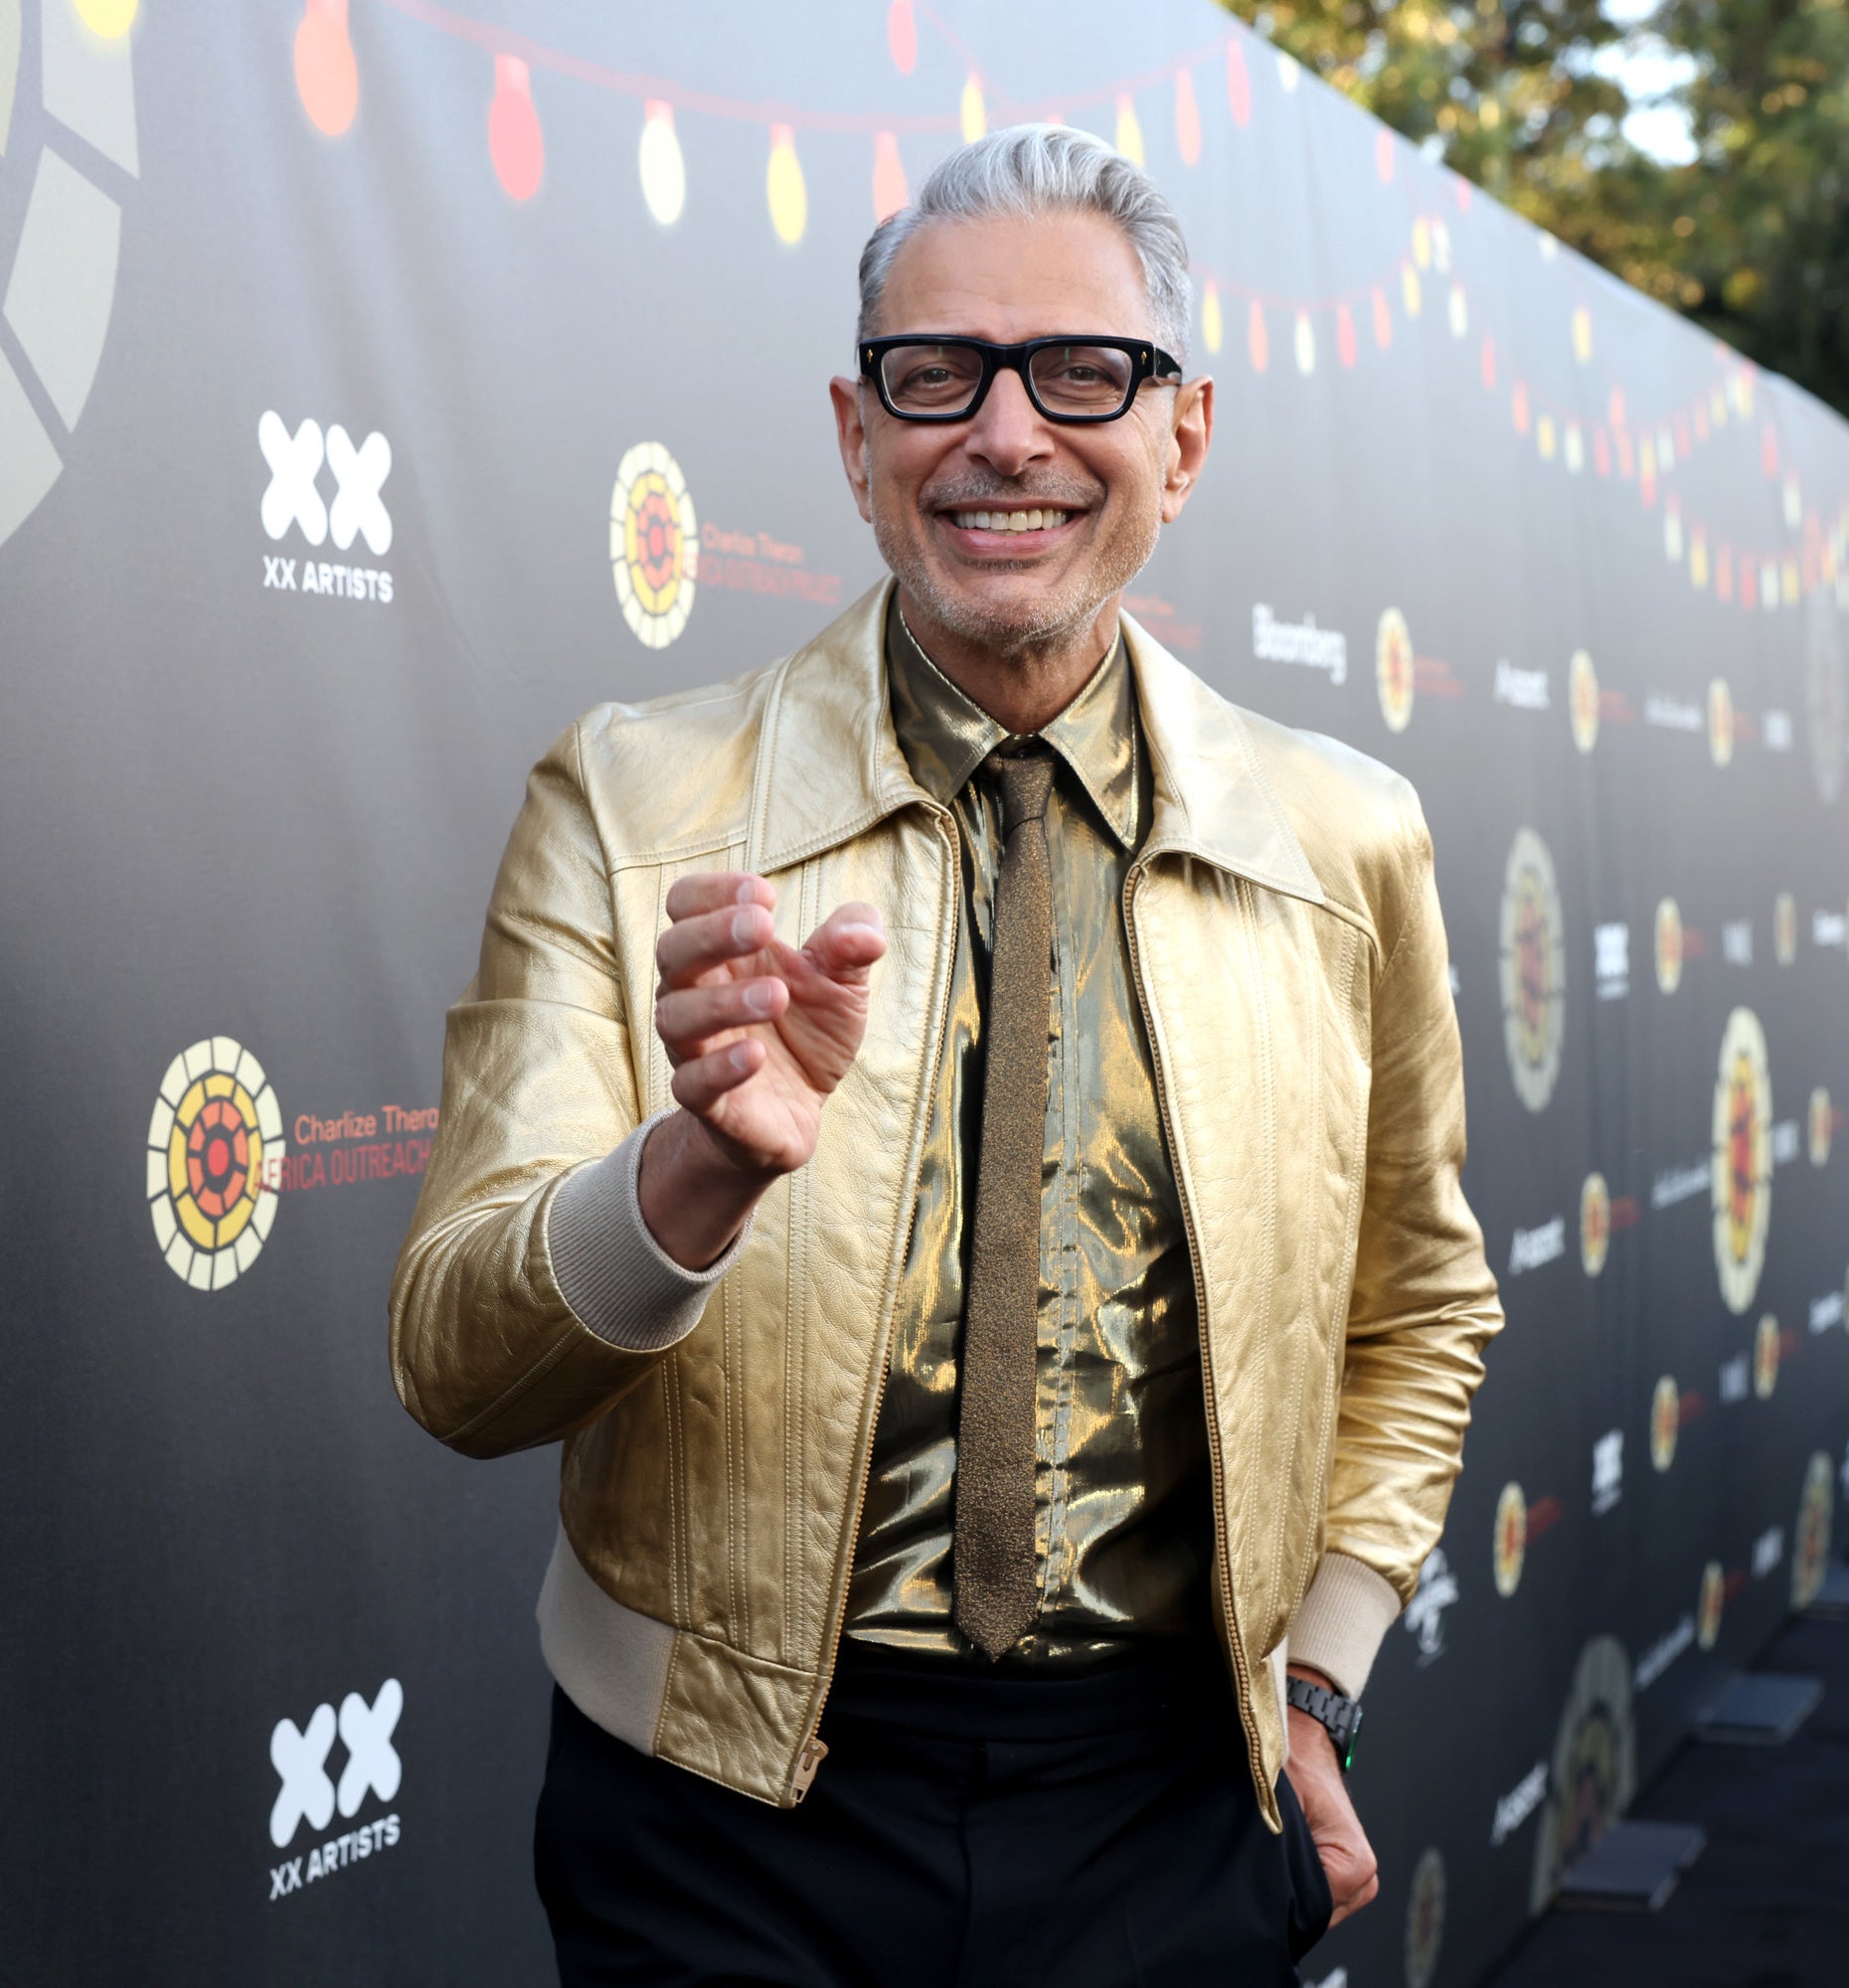 Fashion Drops on X: Jeff Goldblum wearing a Supreme Shibuya Box